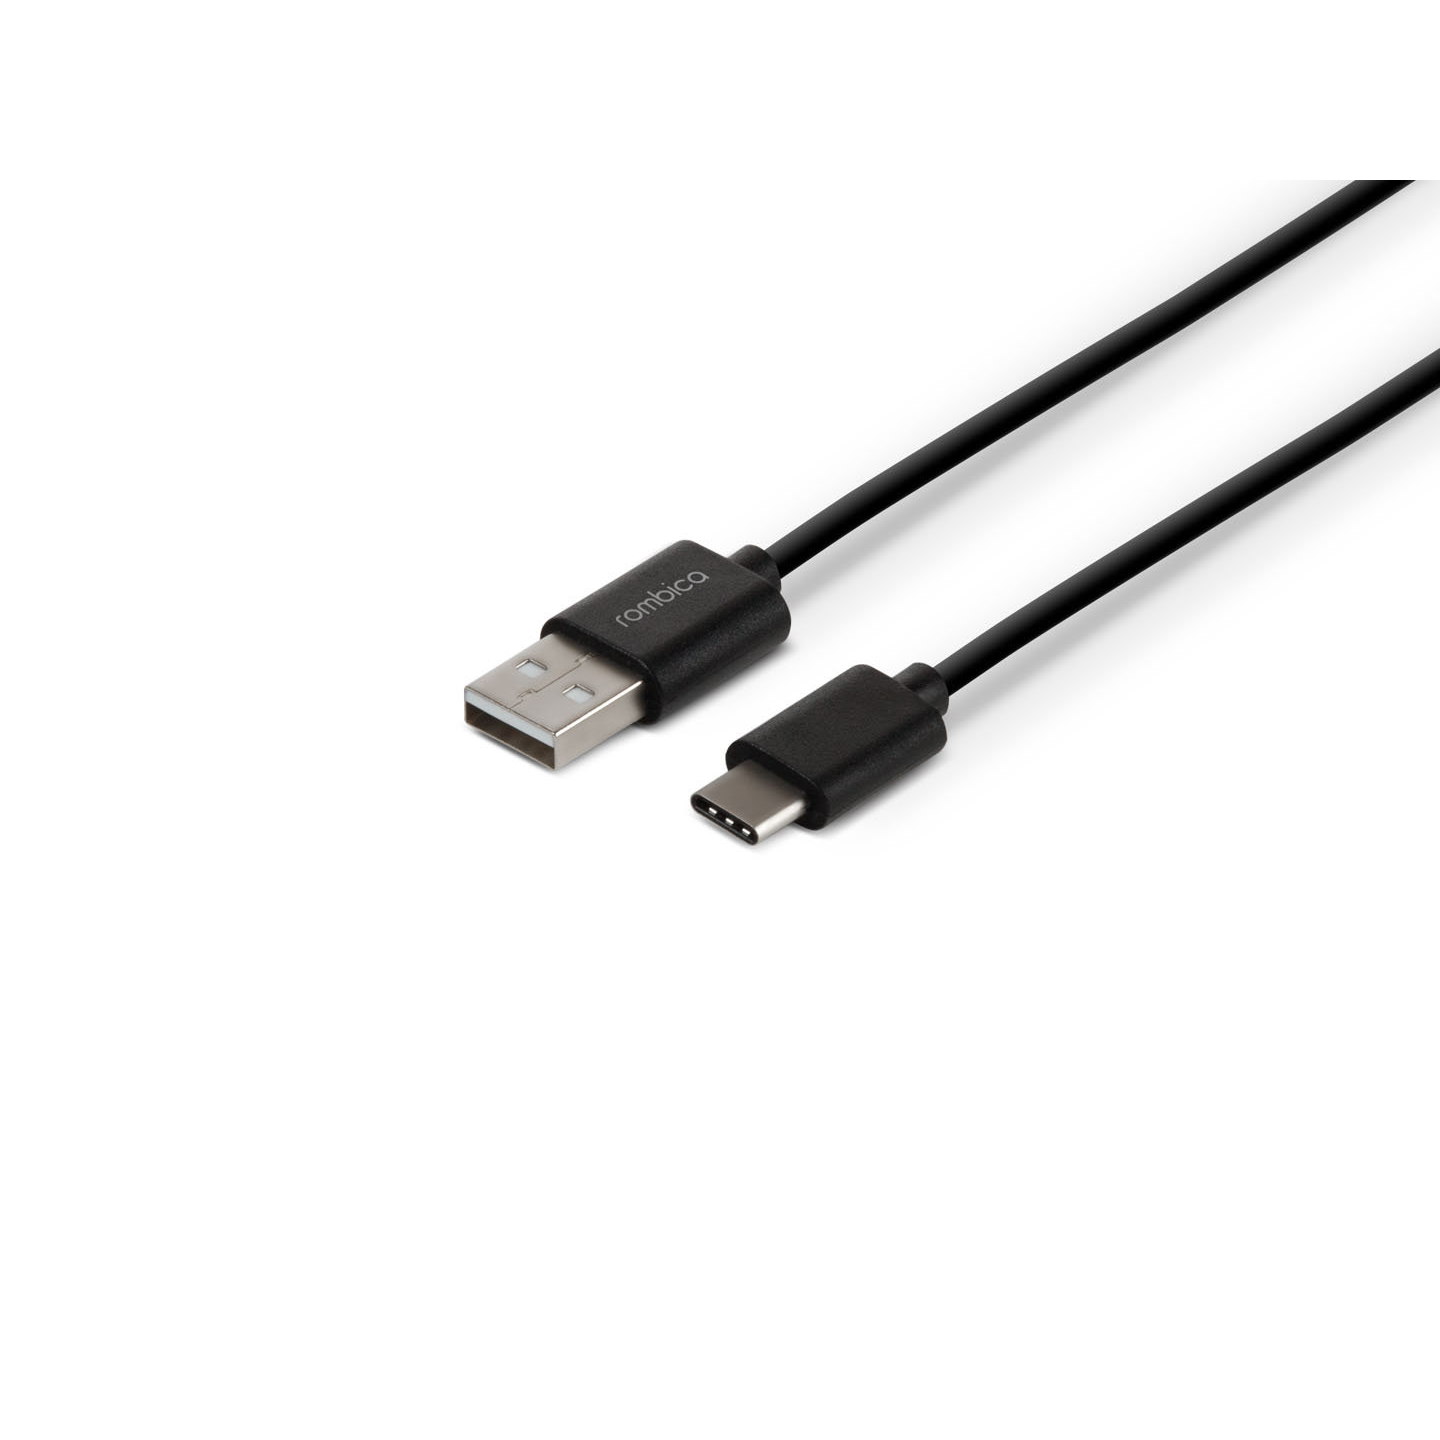 Кабель Rombica Digital CR-01, USB - USB Type-C, пластик, 1м, черный кабель rombica digital cb 04 xxl usb usb type c текстиль 3м черно белый